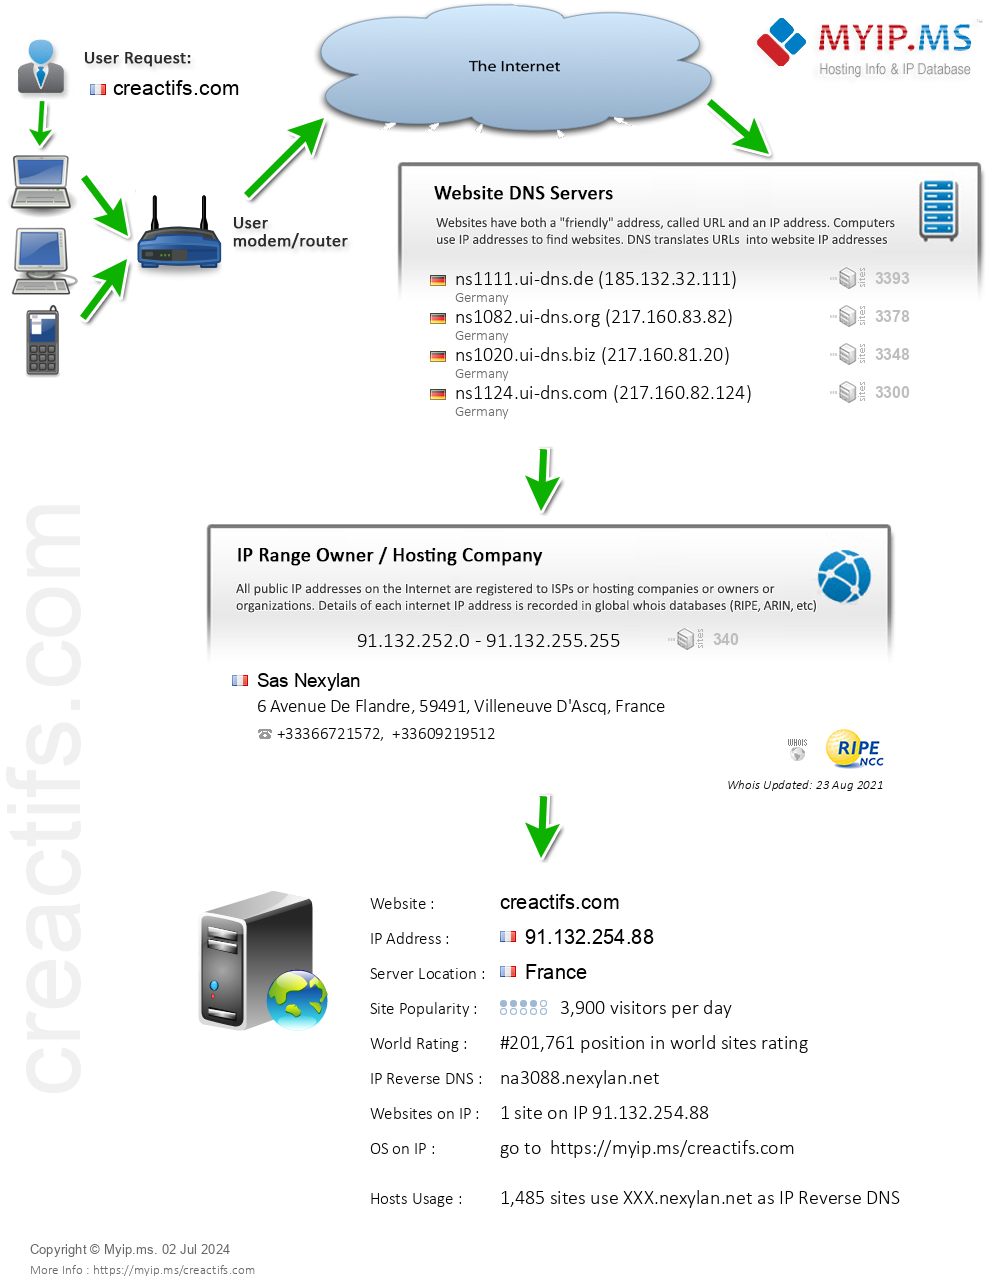 Creactifs.com - Website Hosting Visual IP Diagram